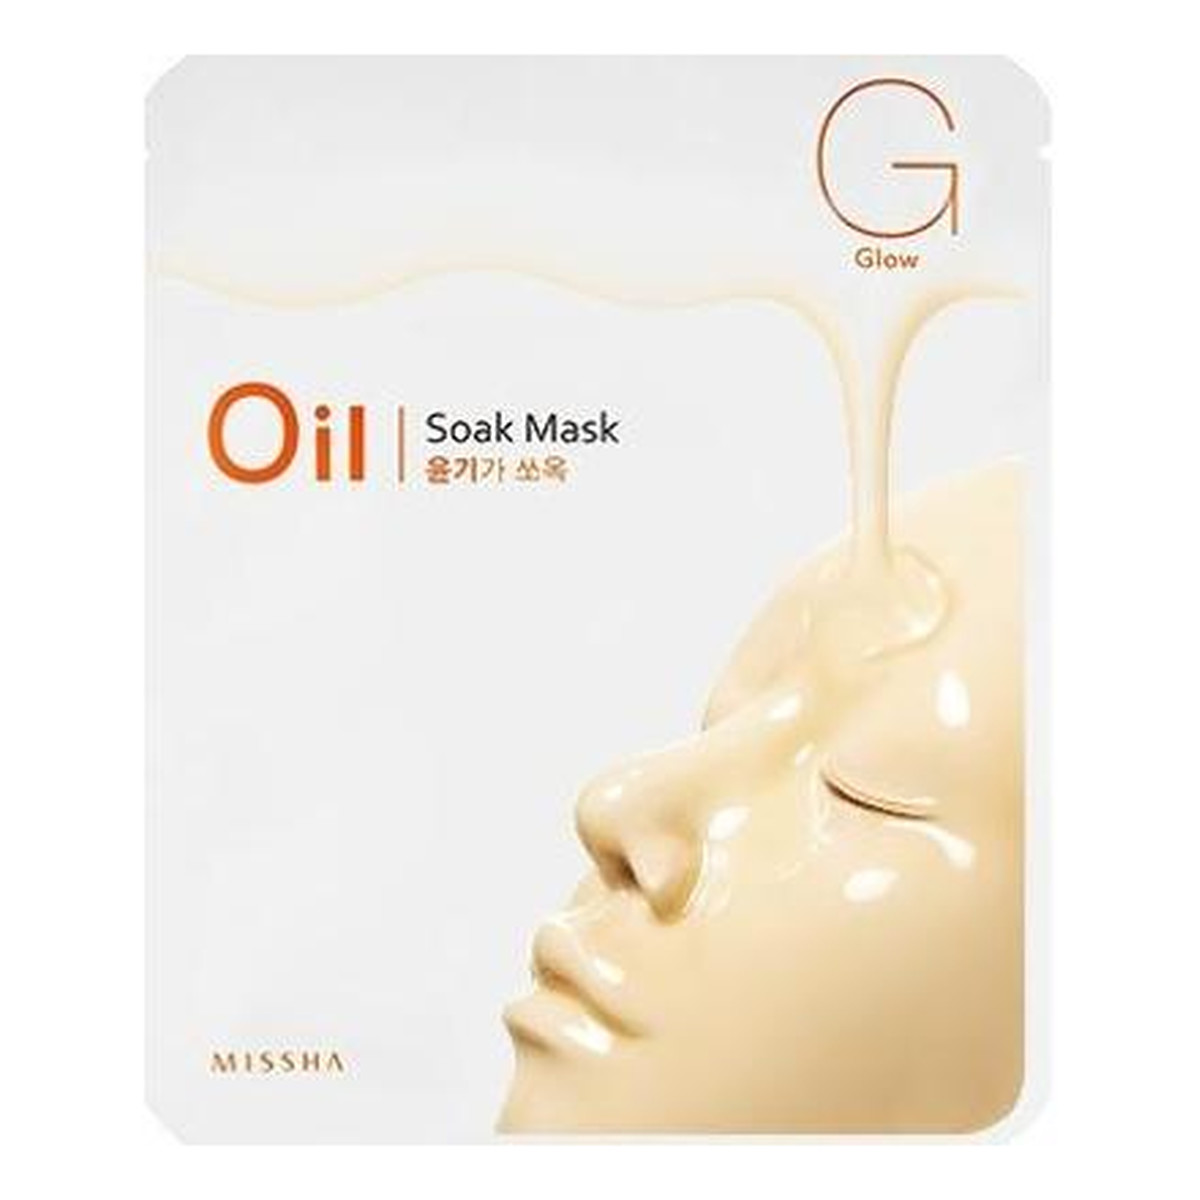 Missha Oil Soak Mask Glow Rozświetlająca Maseczka W Płachcie Z Olejkiem Arganowym 23g